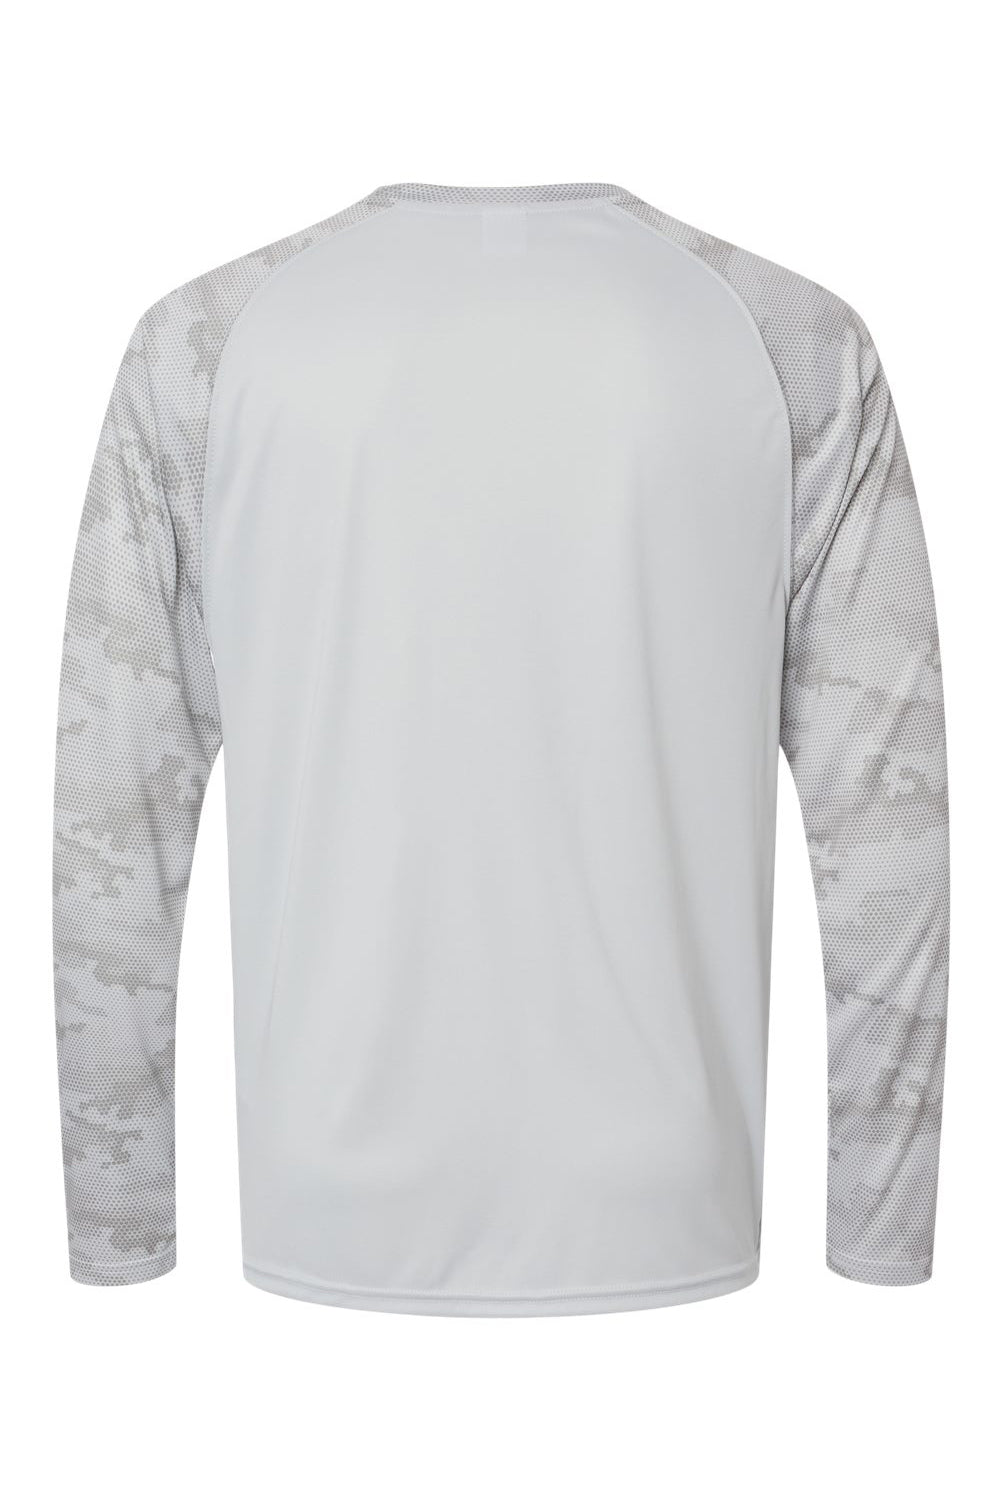 Paragon 216 Mens Cayman Performance Camo Colorblocked Long Sleeve Crewneck T-Shirt Aluminum Grey Flat Back